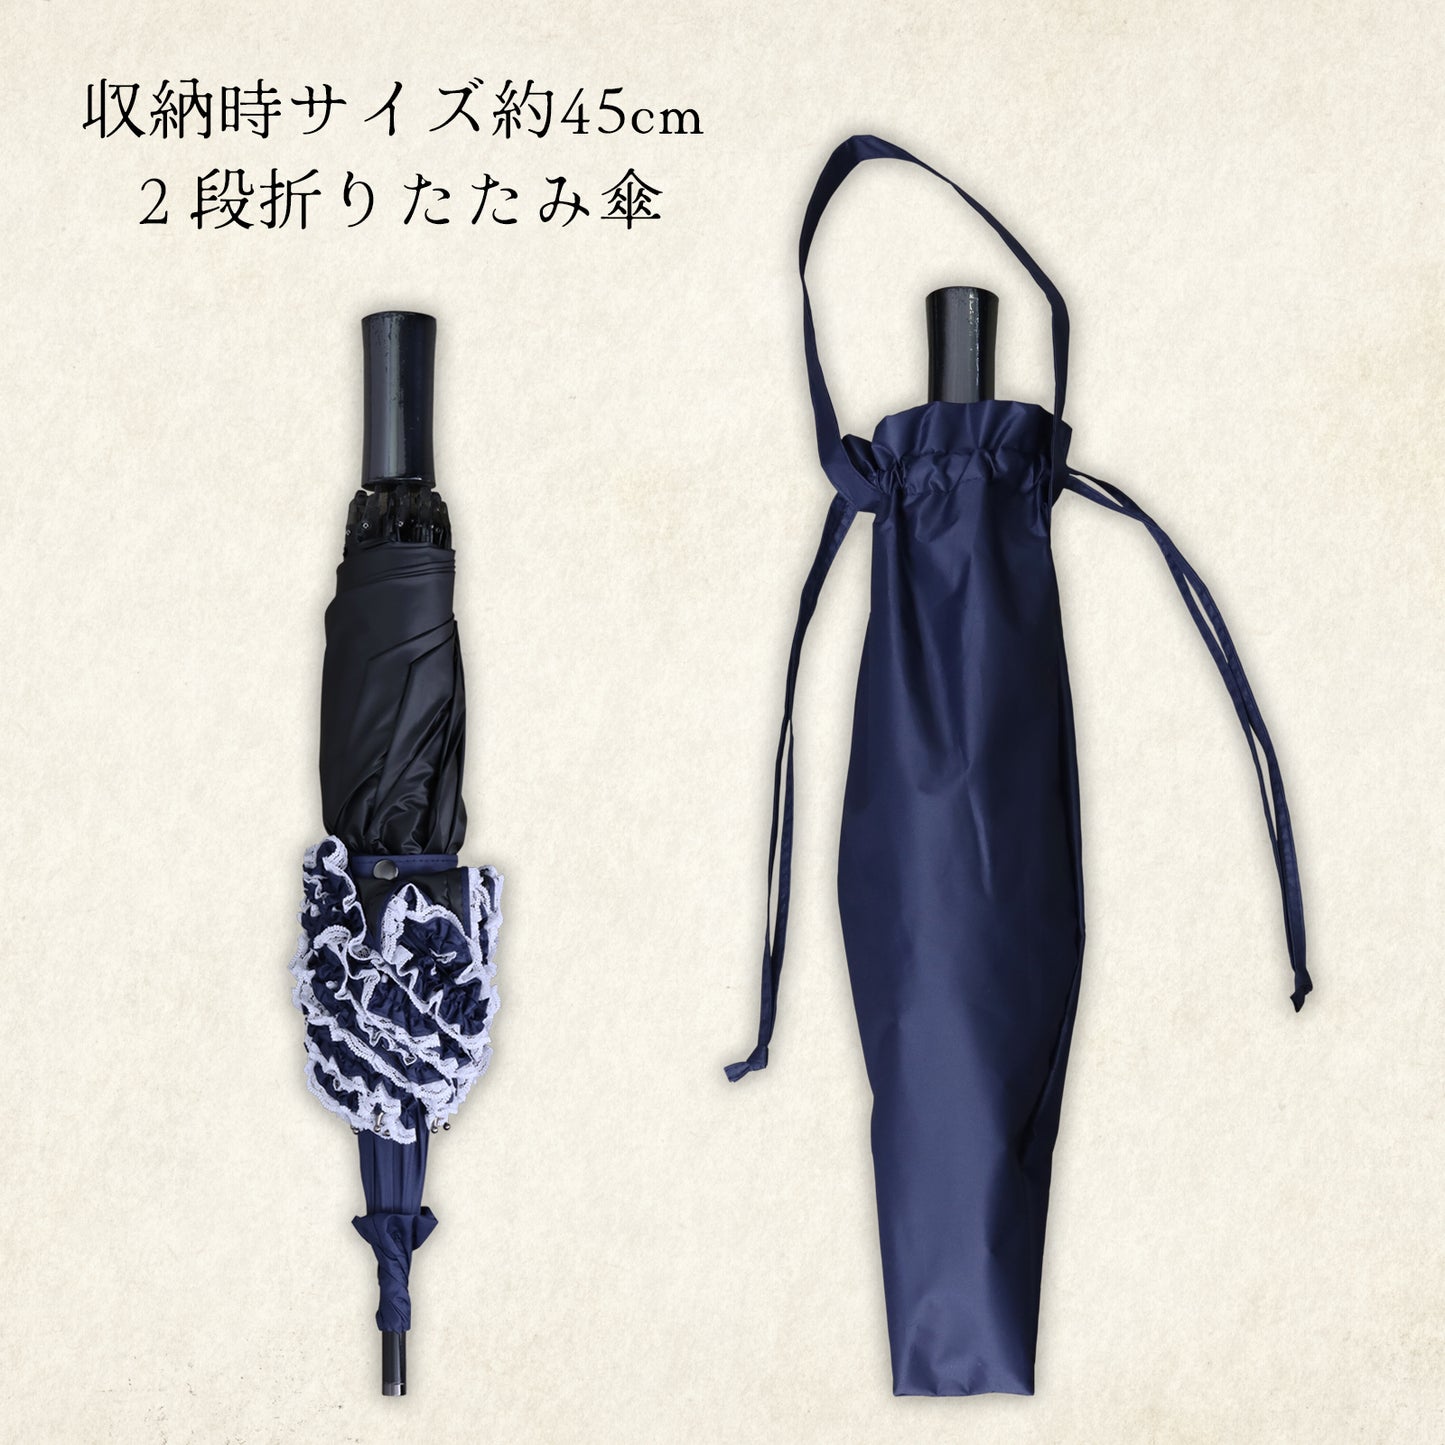 【New】tiny-facile (タイニー ファシル) - パゴダ 1級遮光 折りたたみ傘 晴雨兼用 UVカット フリル